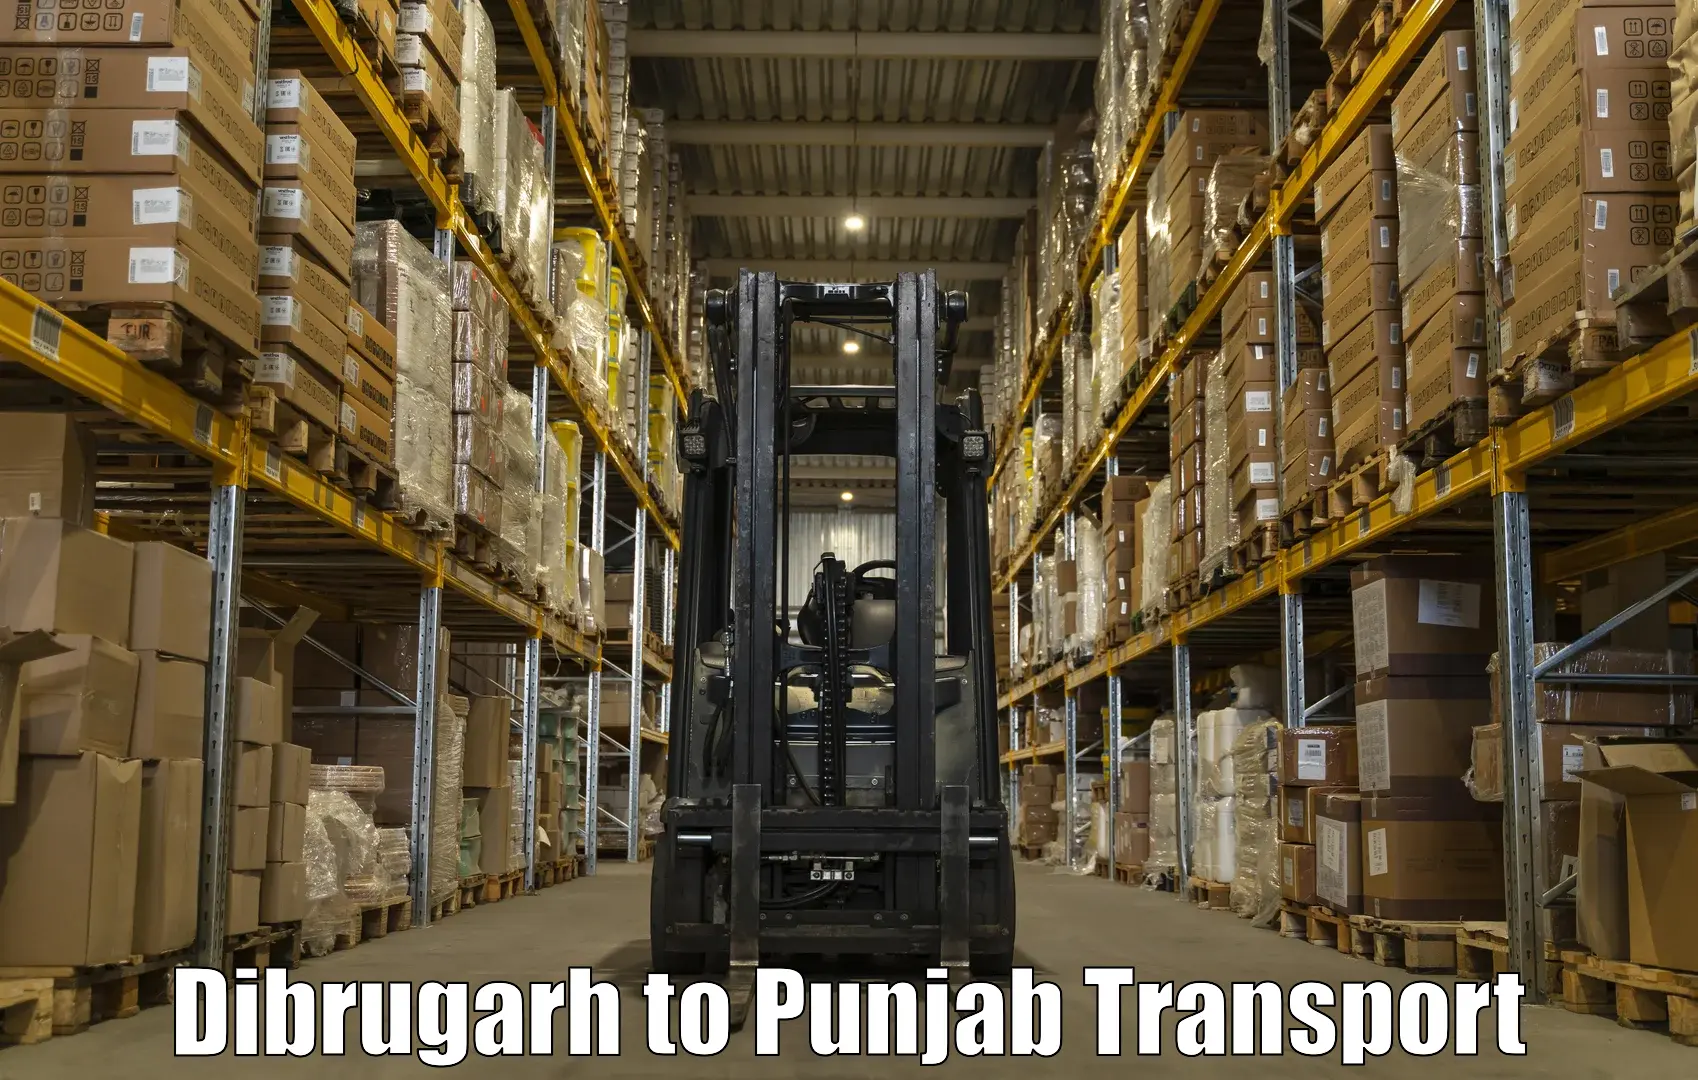 Vehicle transport services Dibrugarh to Talwara